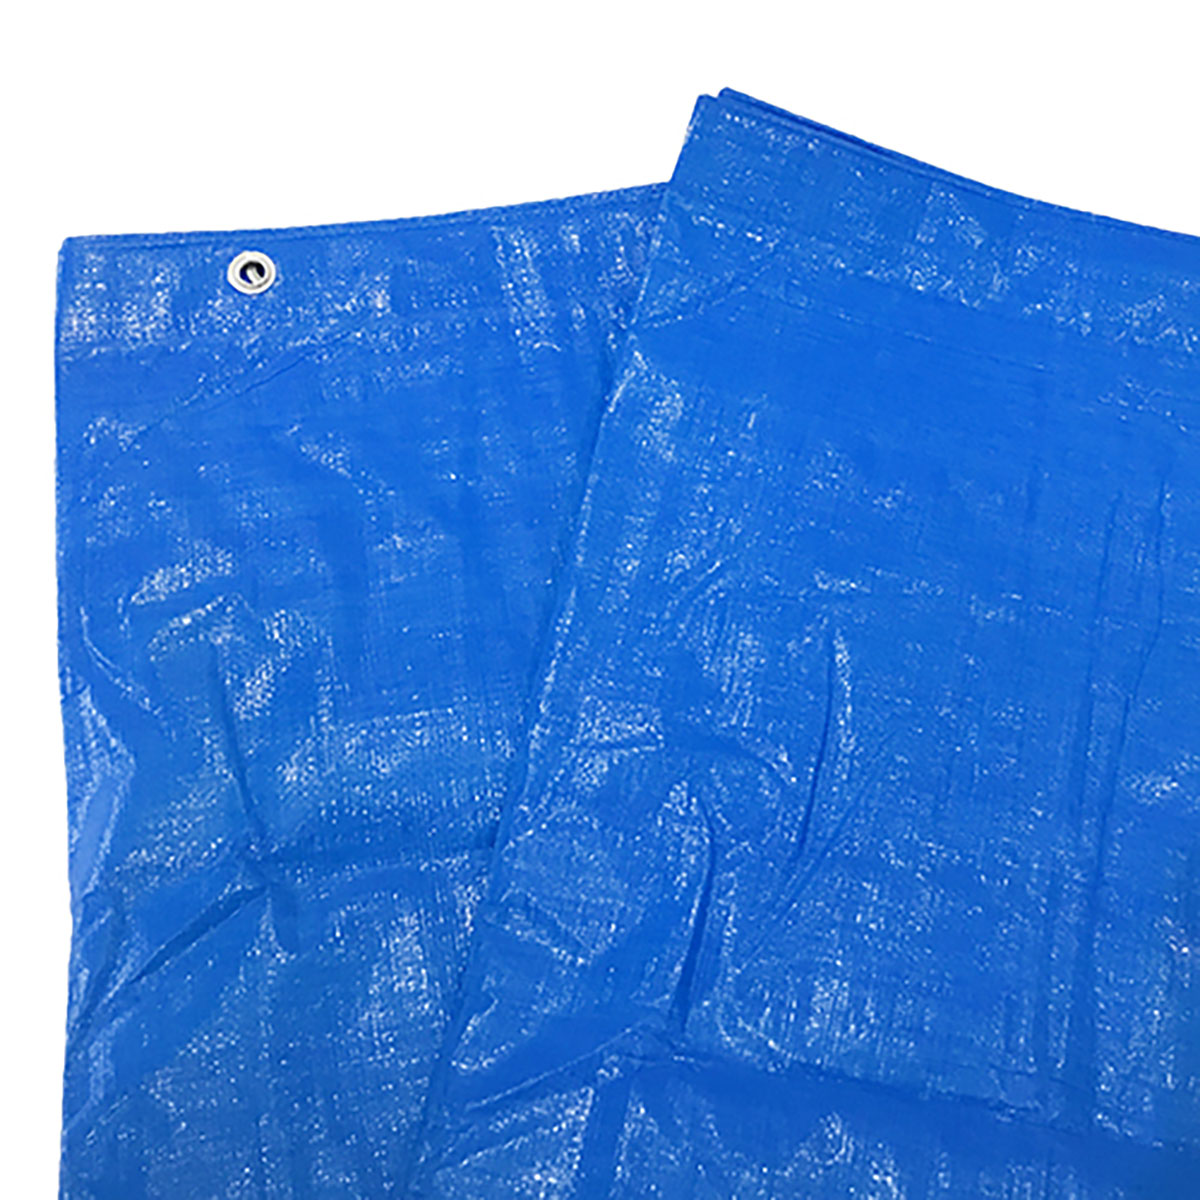 ブルーシート 巾約6.9×長さ約7.0m #3000